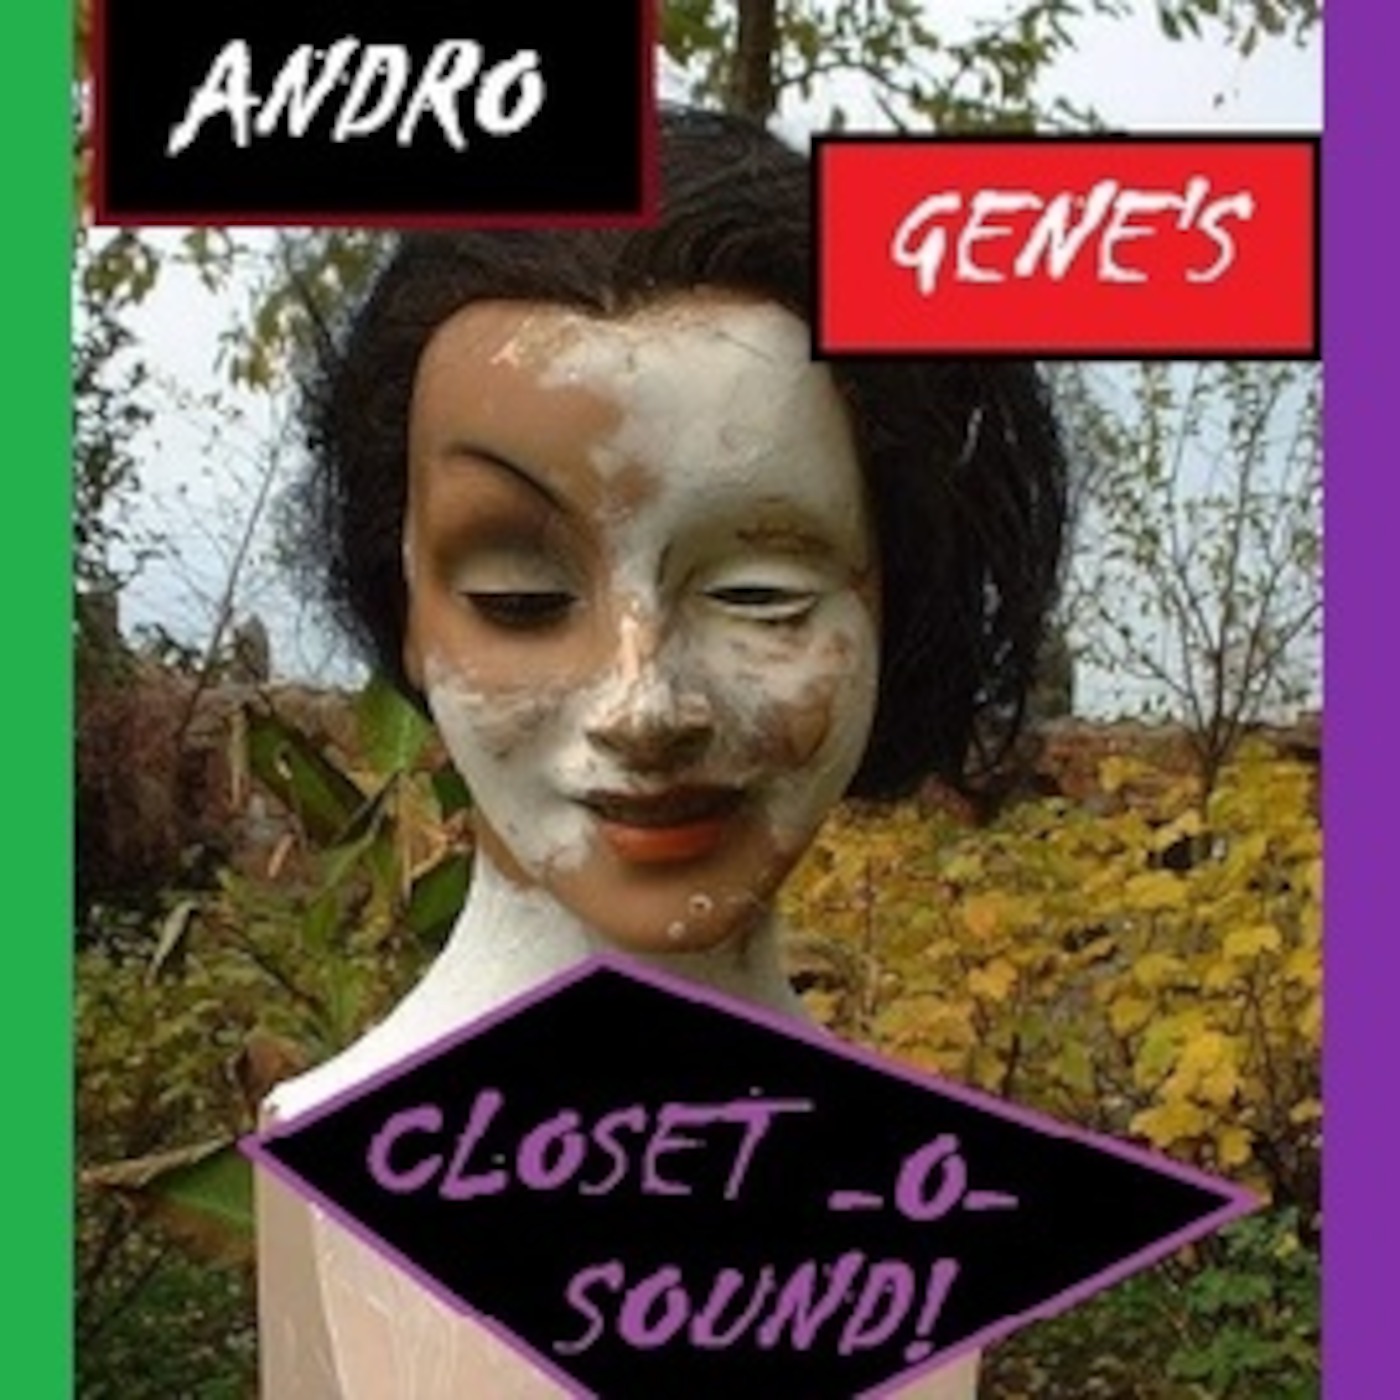 Andro Gene's Closet-o-Sound!